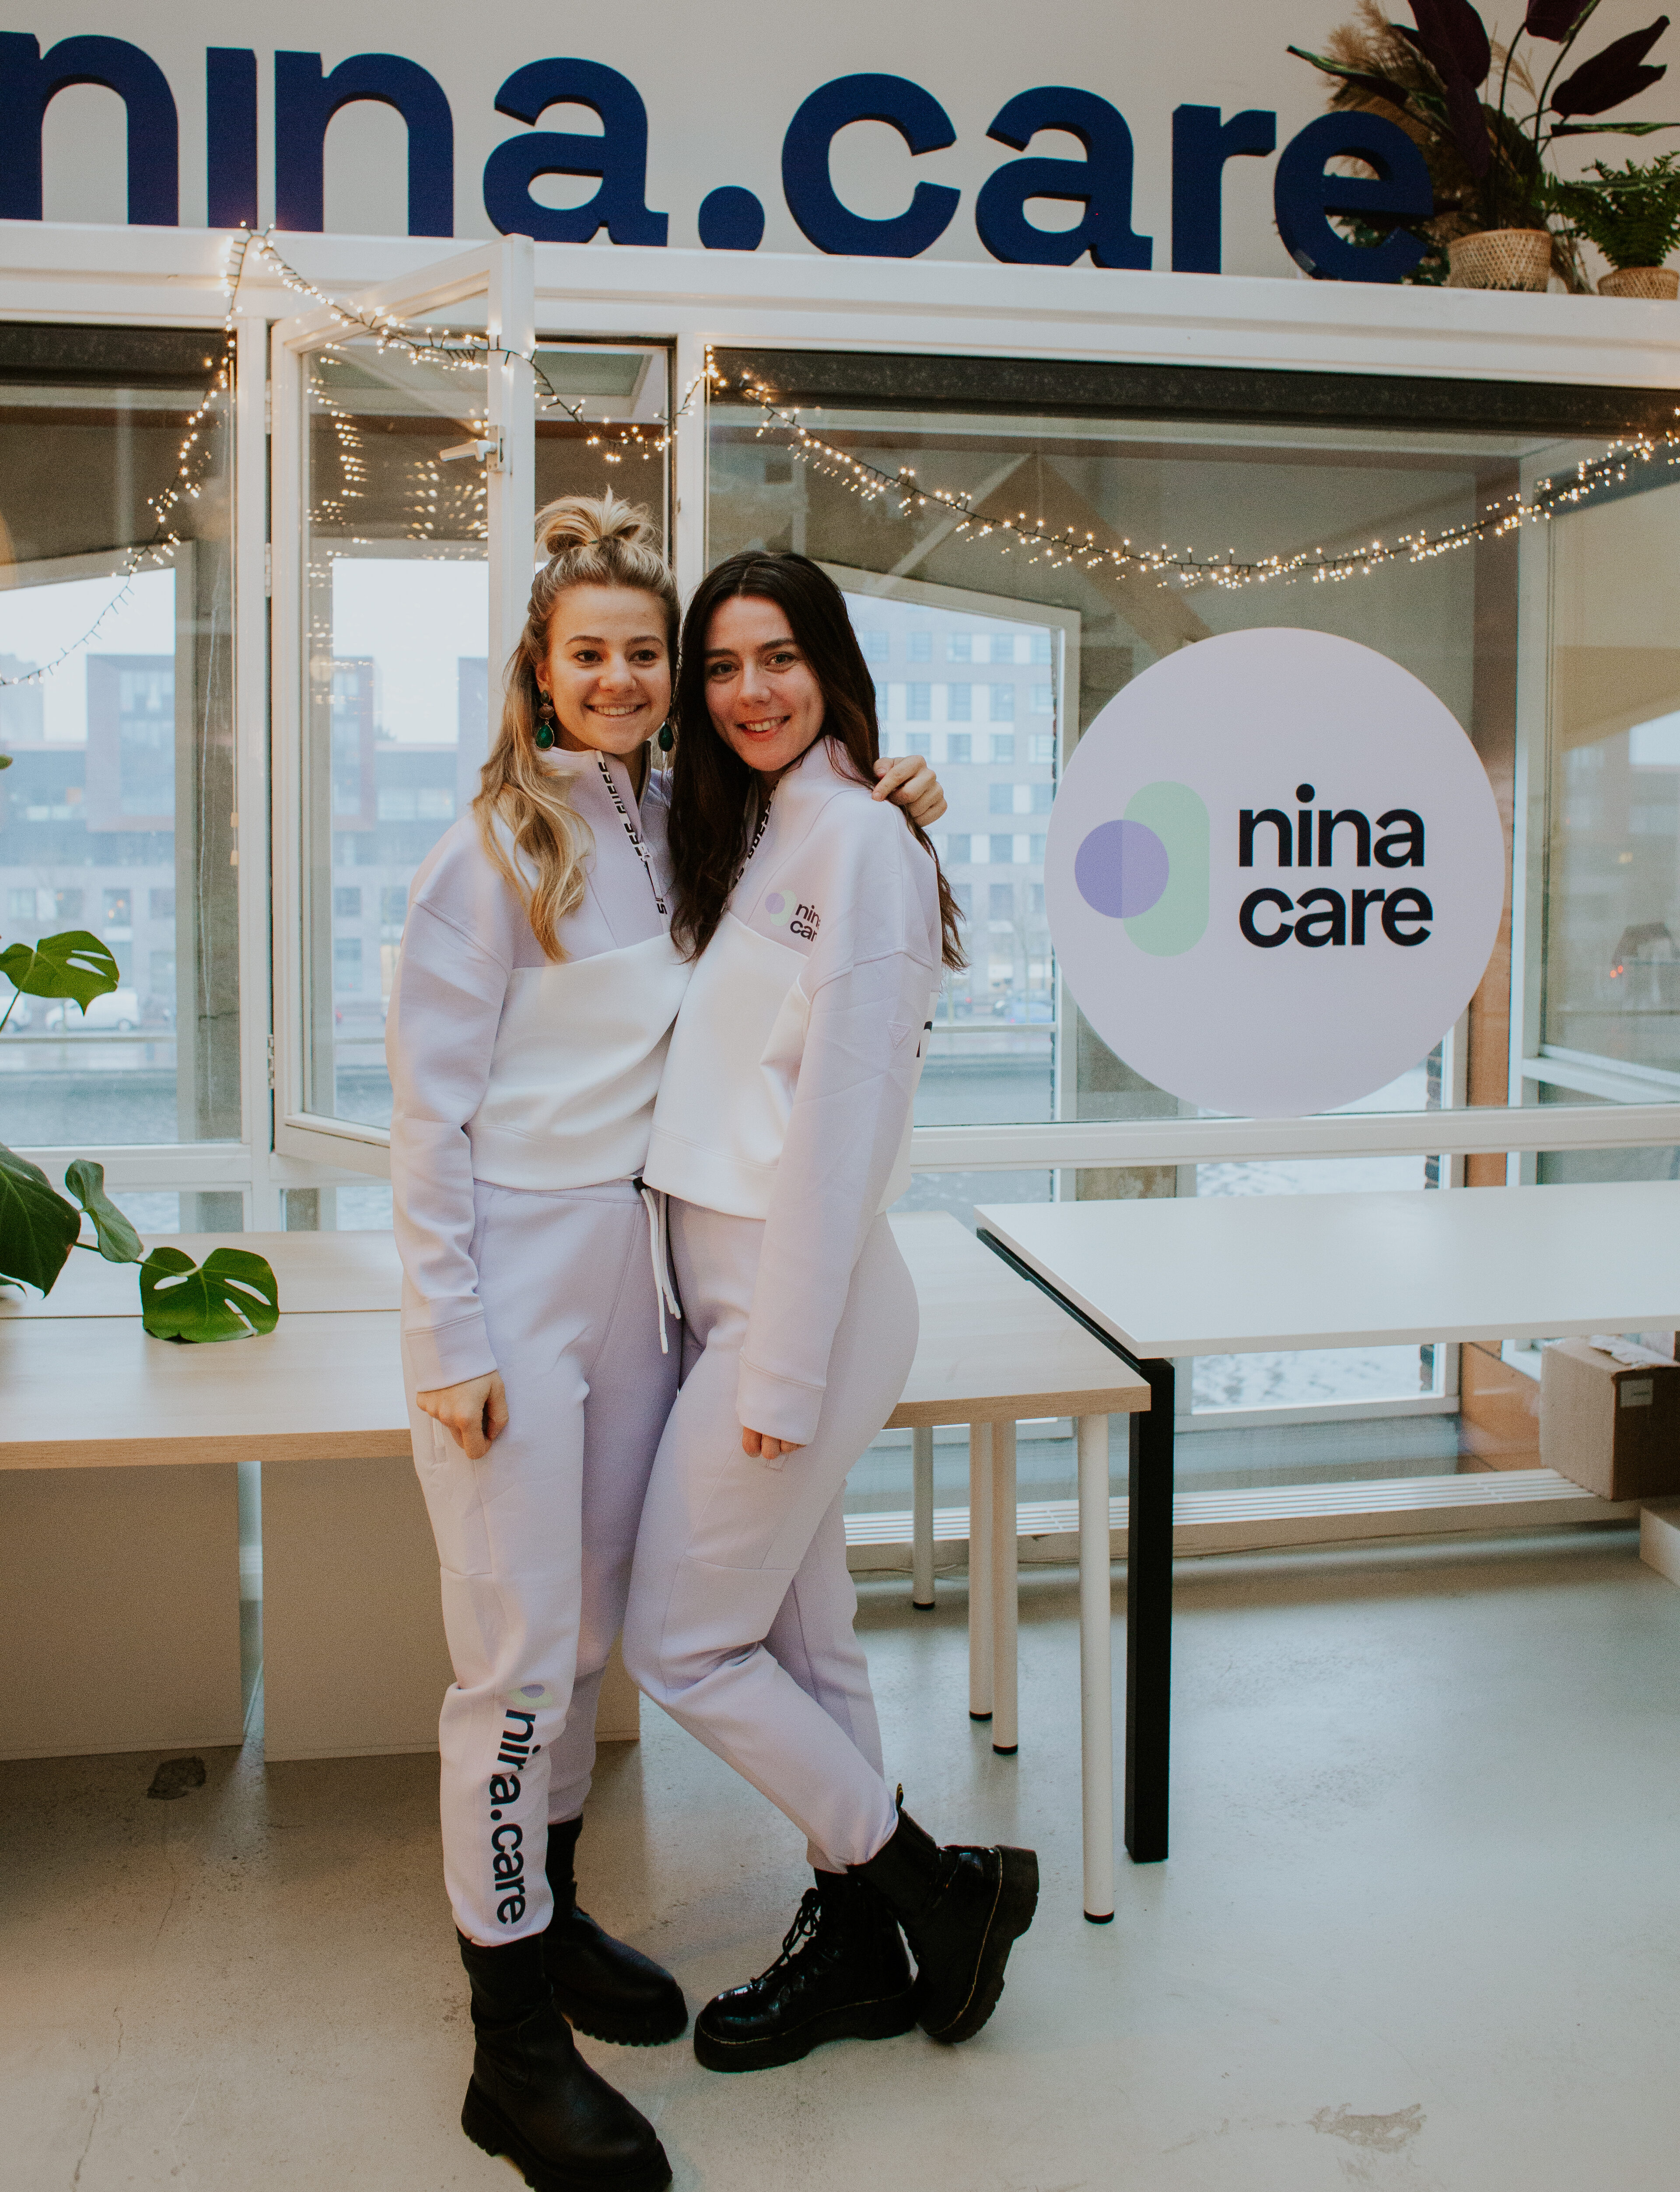 twee meiden die het nina.care uniform showen door te poseren onder het nina.care logo op kantoor